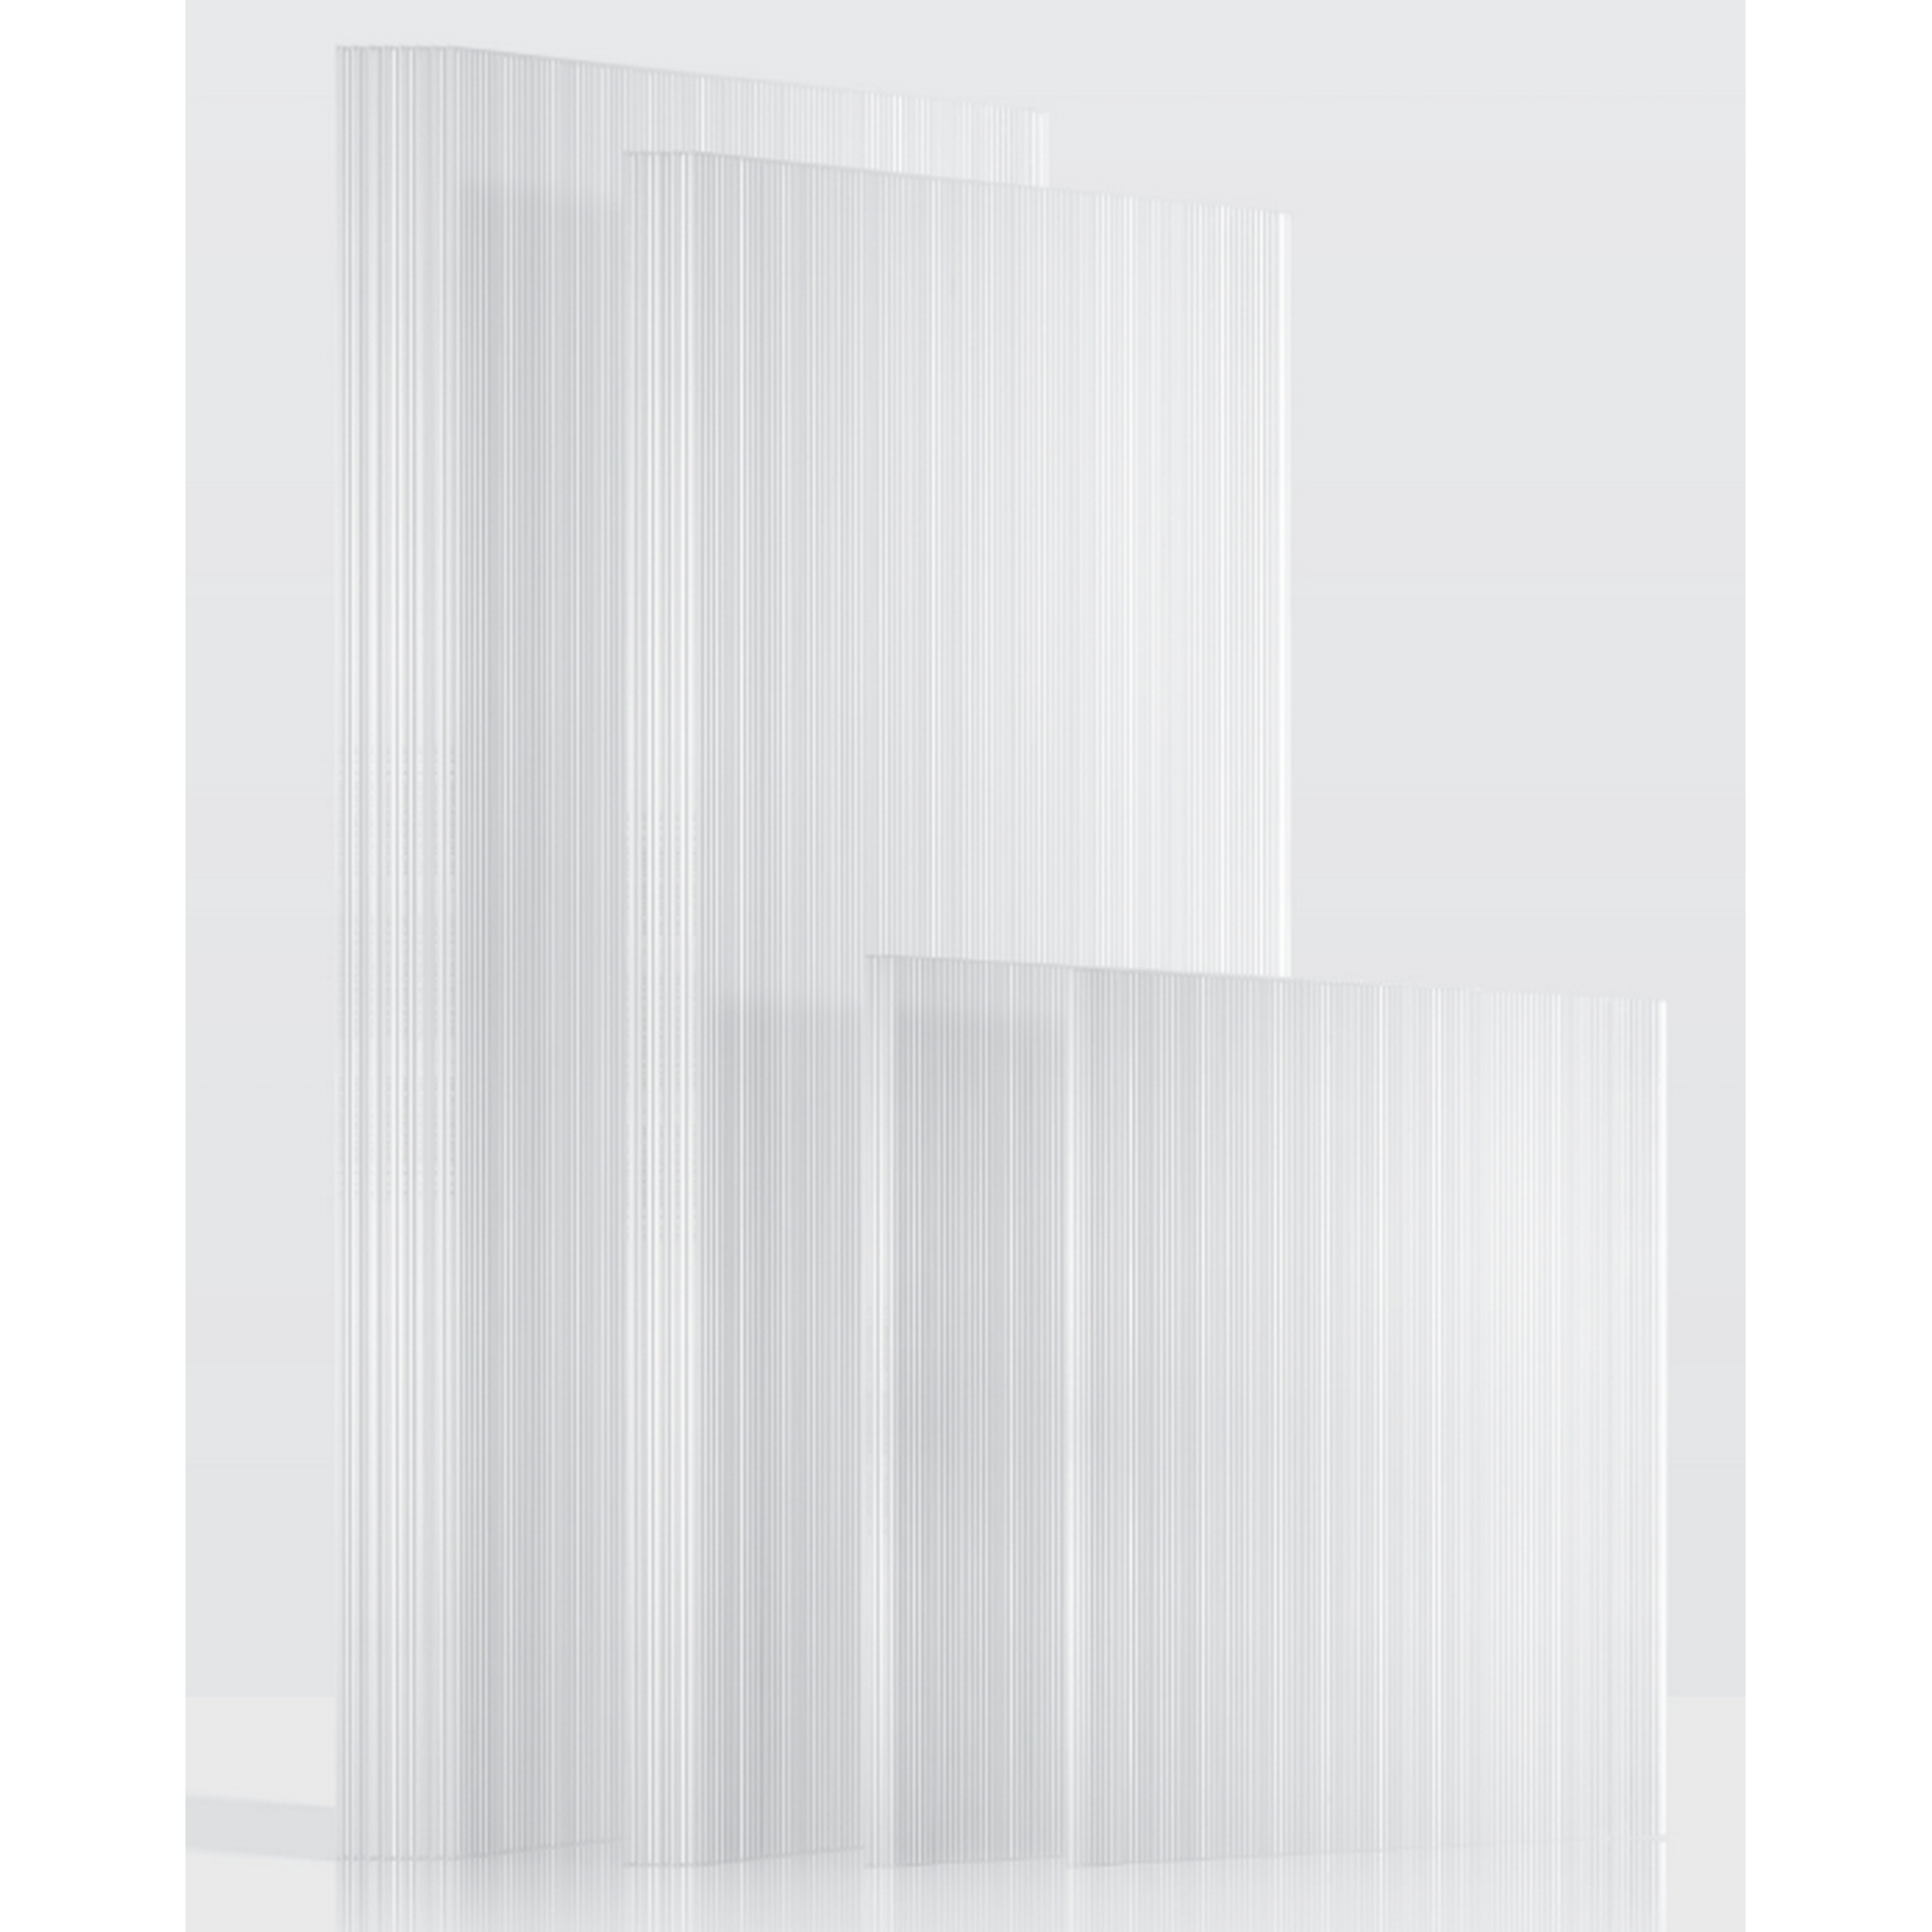 Hohlkammerplatten Gewächshaus 'Ergänzungsset 3' transparent 4 mm, 16-teilig + product picture